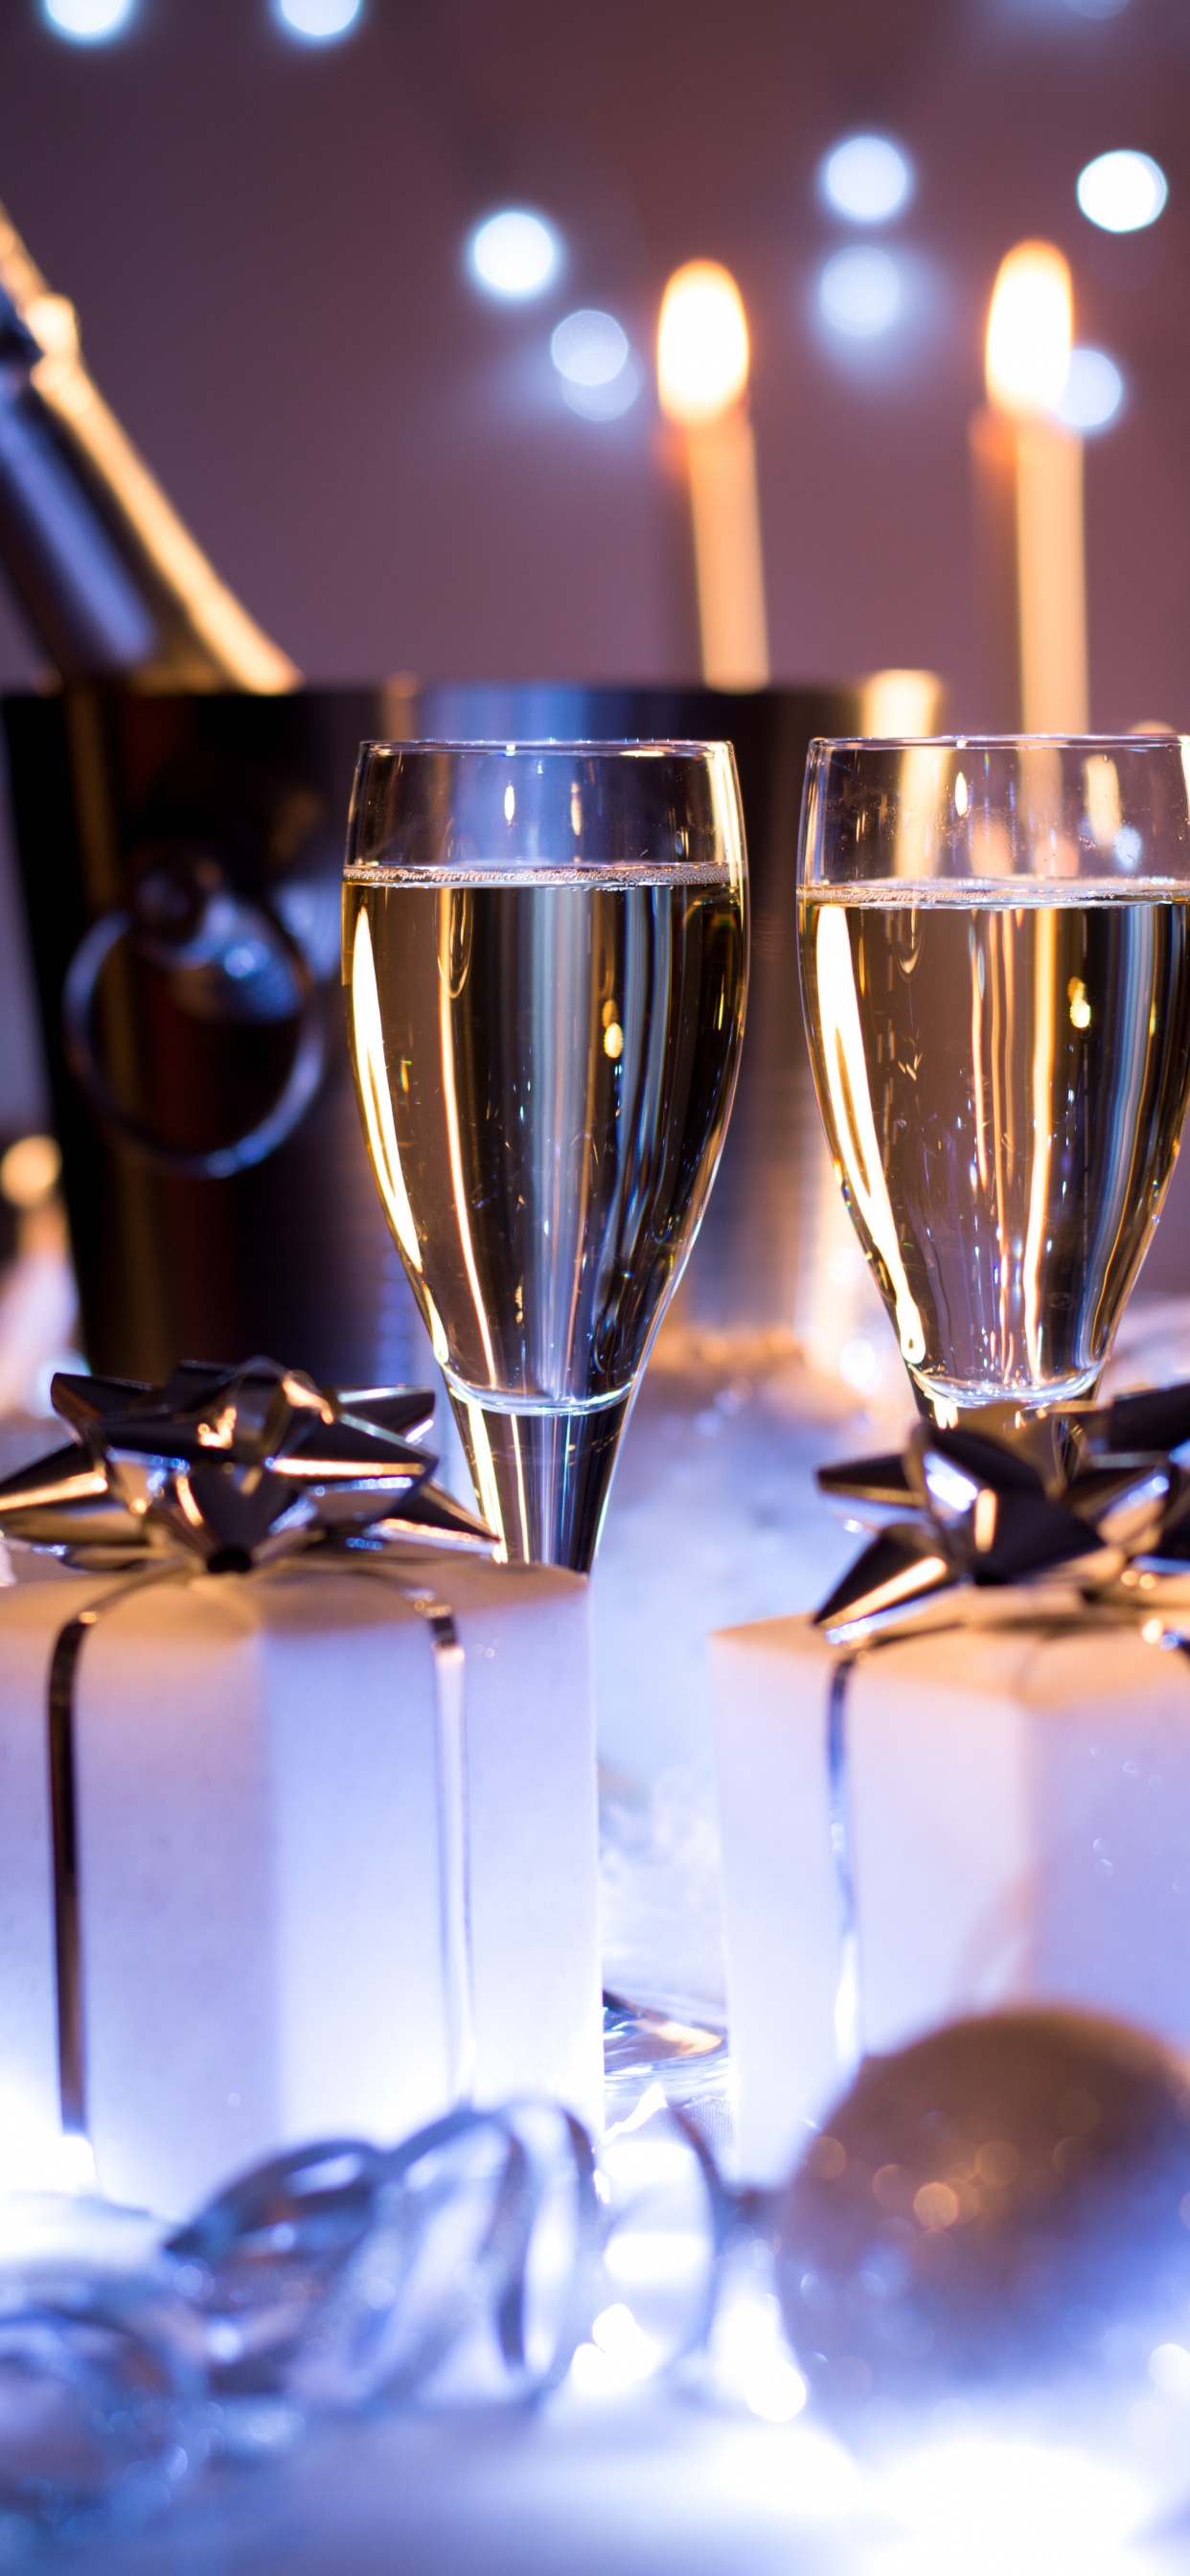 香槟, 葡萄酒, 新年前夕, 新的一年, 仍然生活 壁纸 1242x2688 允许